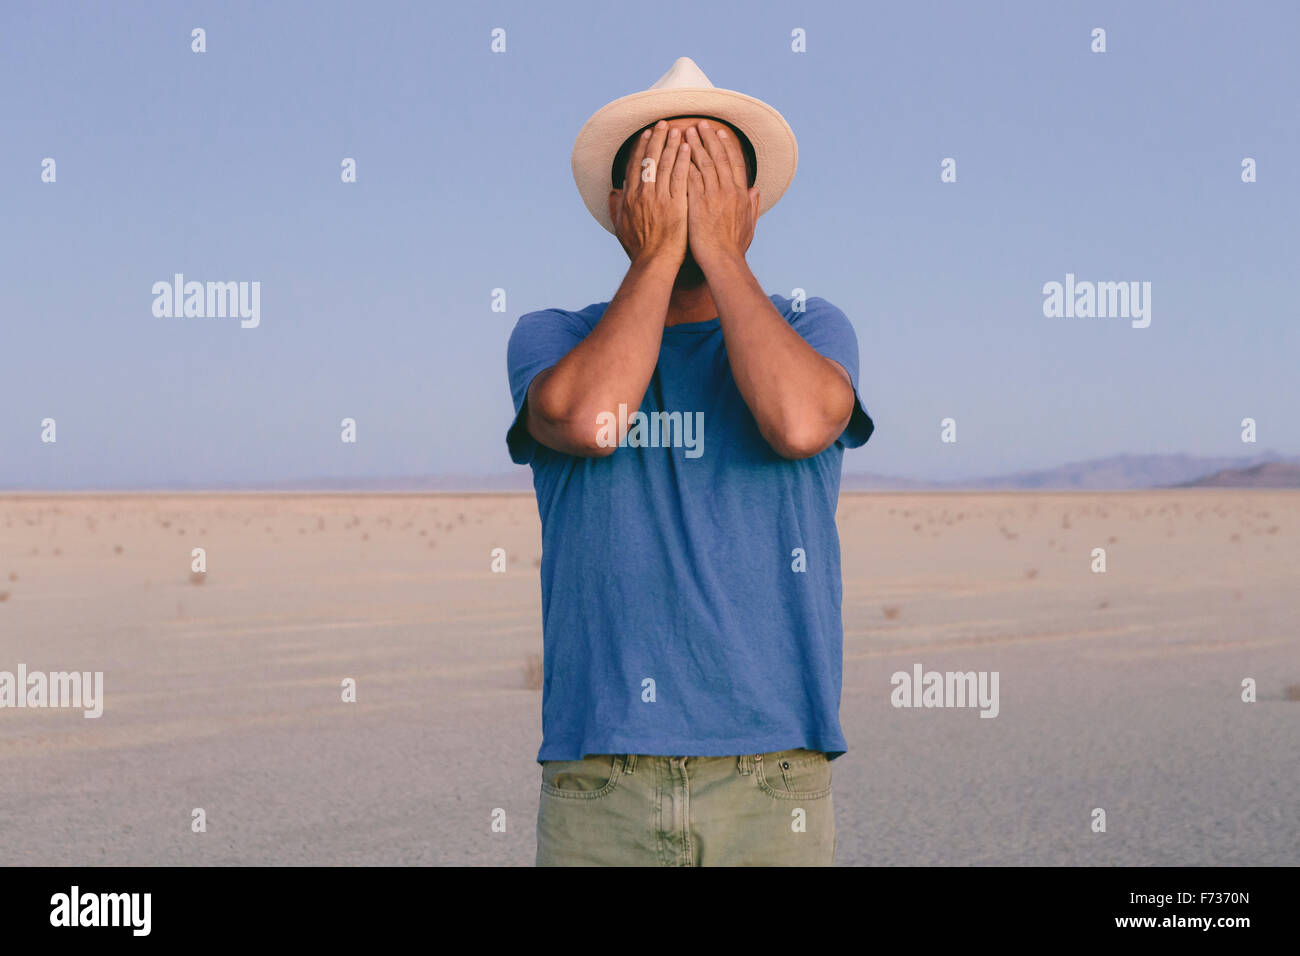 Un homme dans un paysage désertique couvrant son visage avec ses mains. Banque D'Images